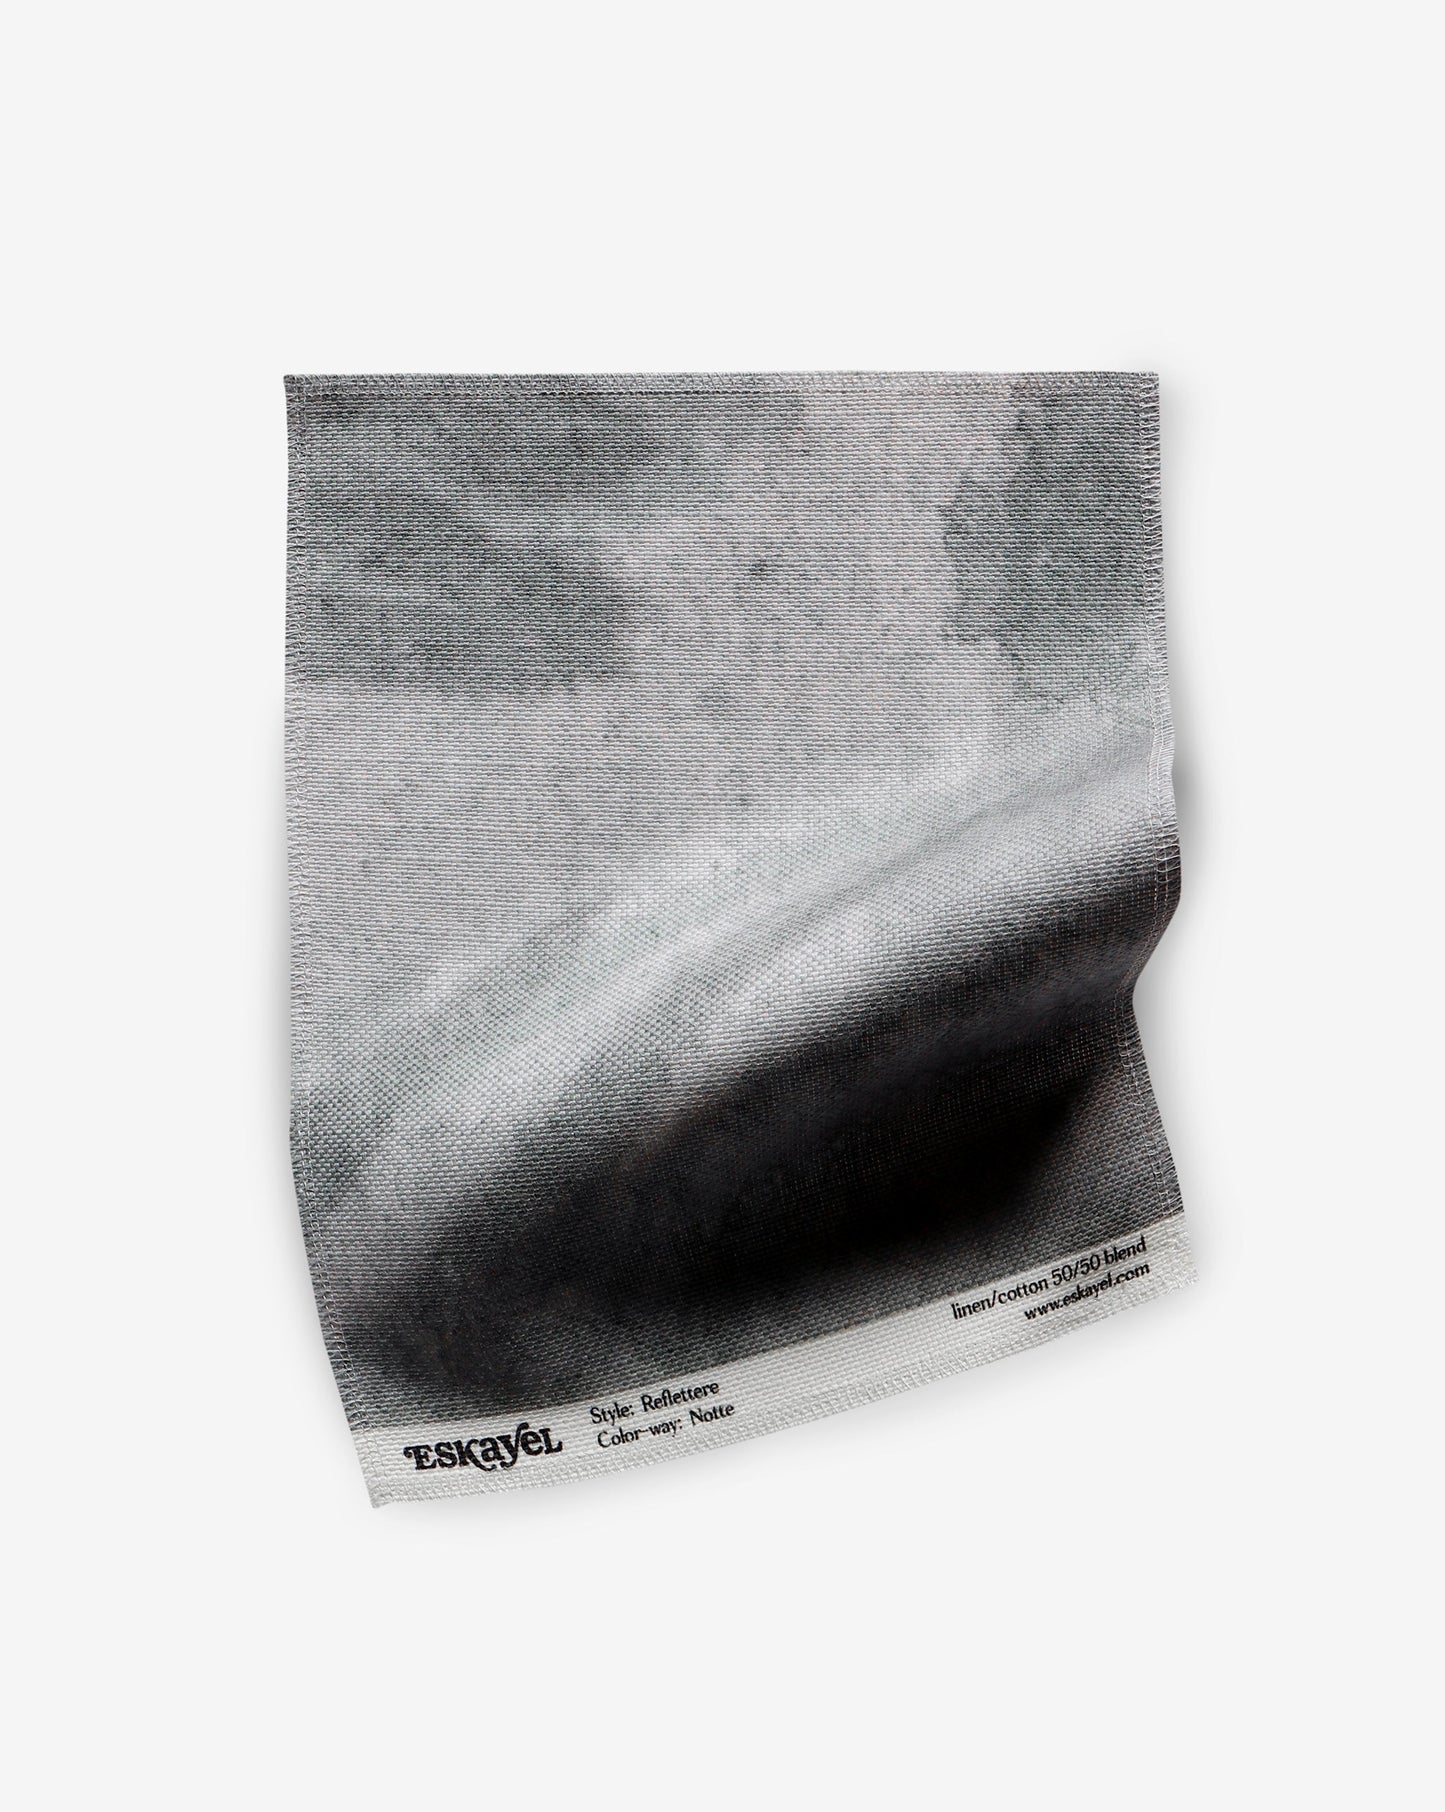 Reflettere Fabric Sample||Notte